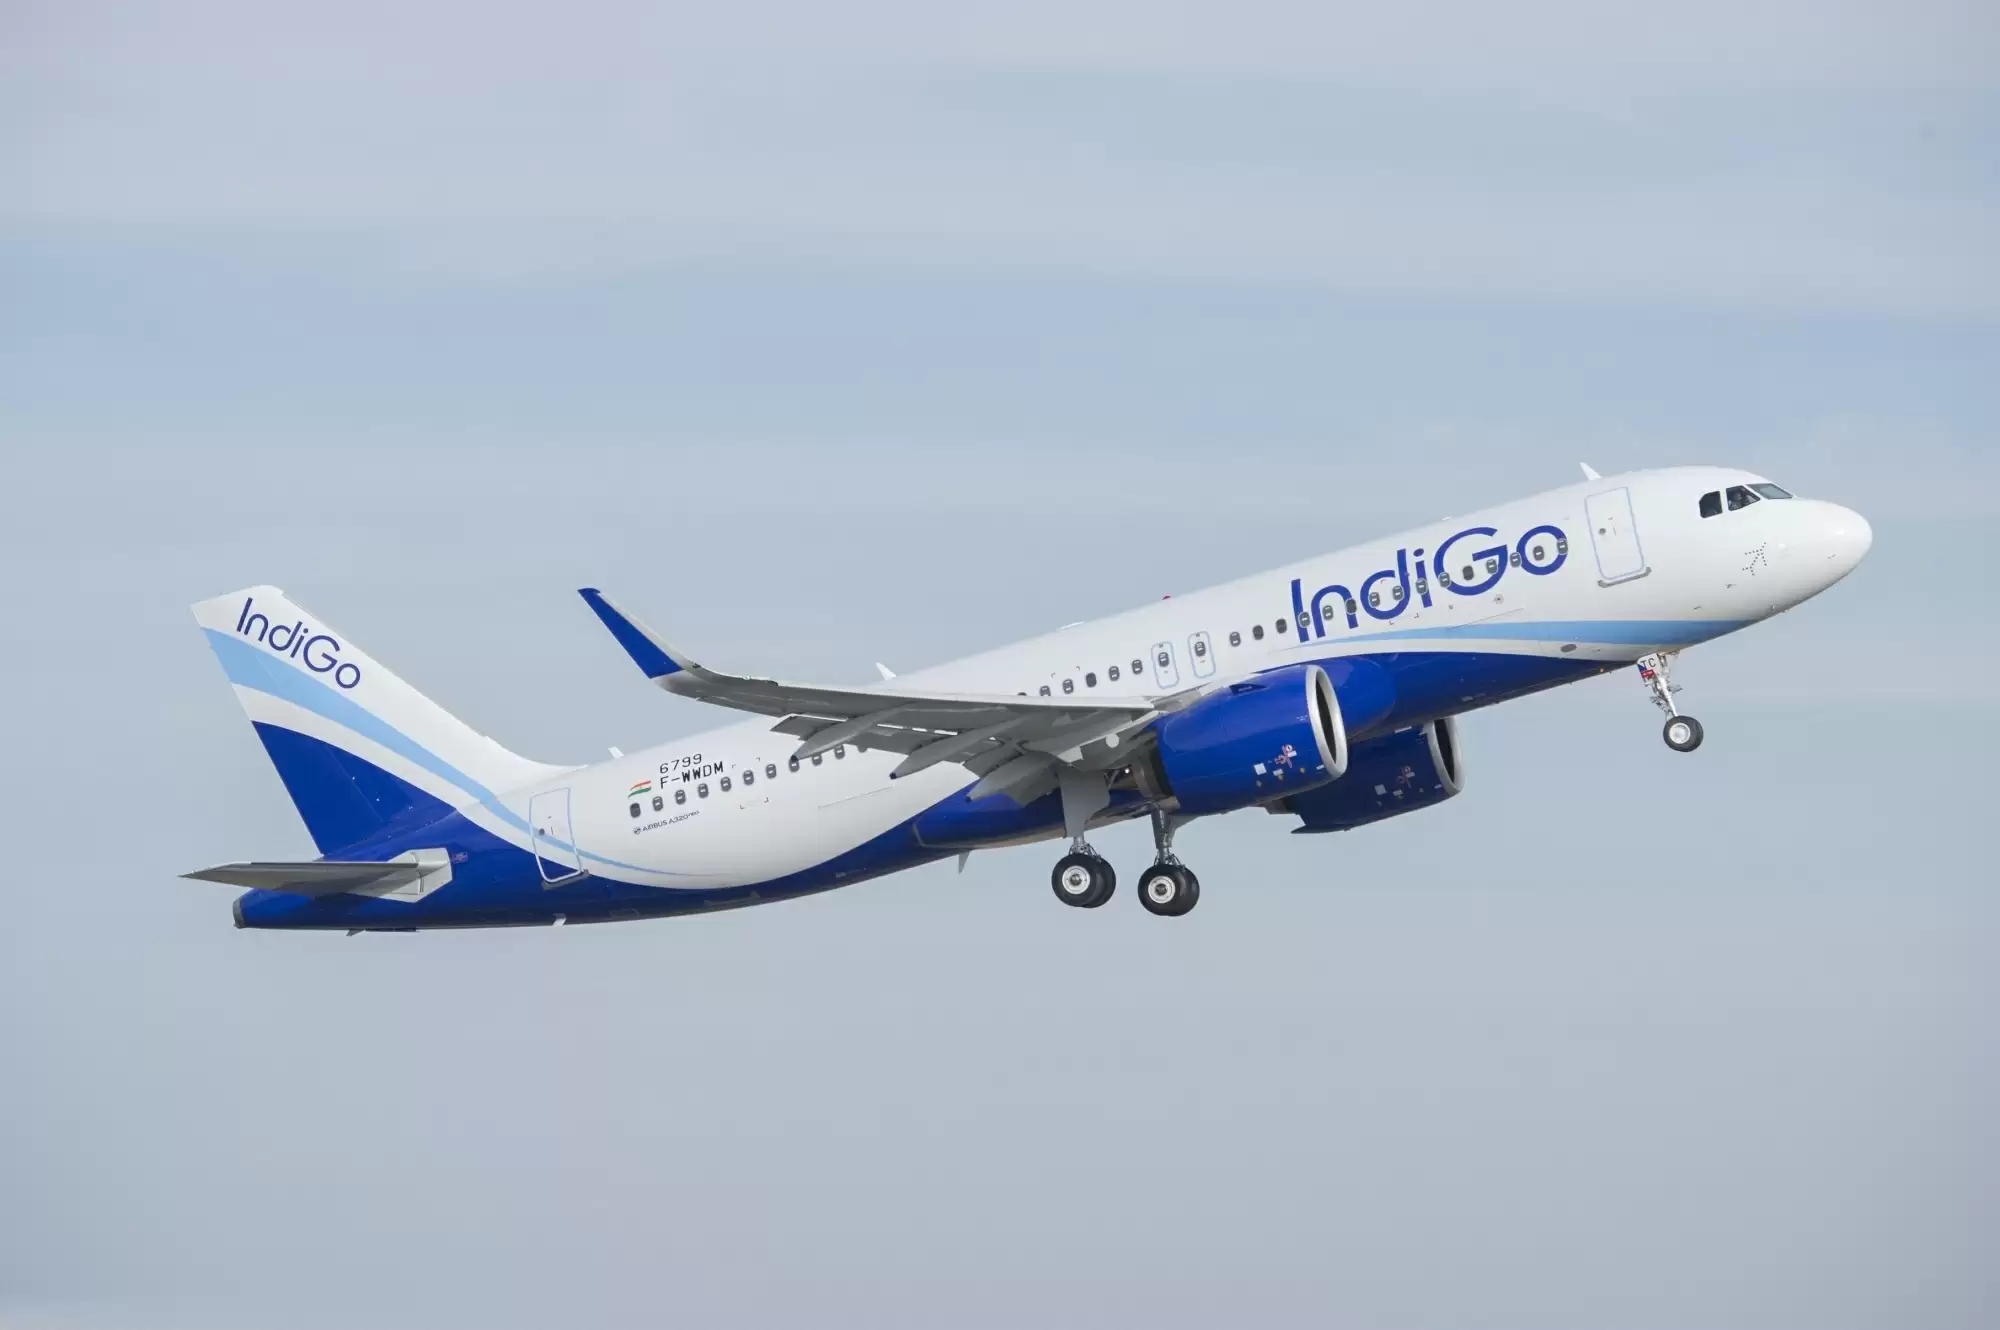 खराब मौसम के चलते पाकिस्तान में भटका इंडिगो का विमान : रिपोर्ट